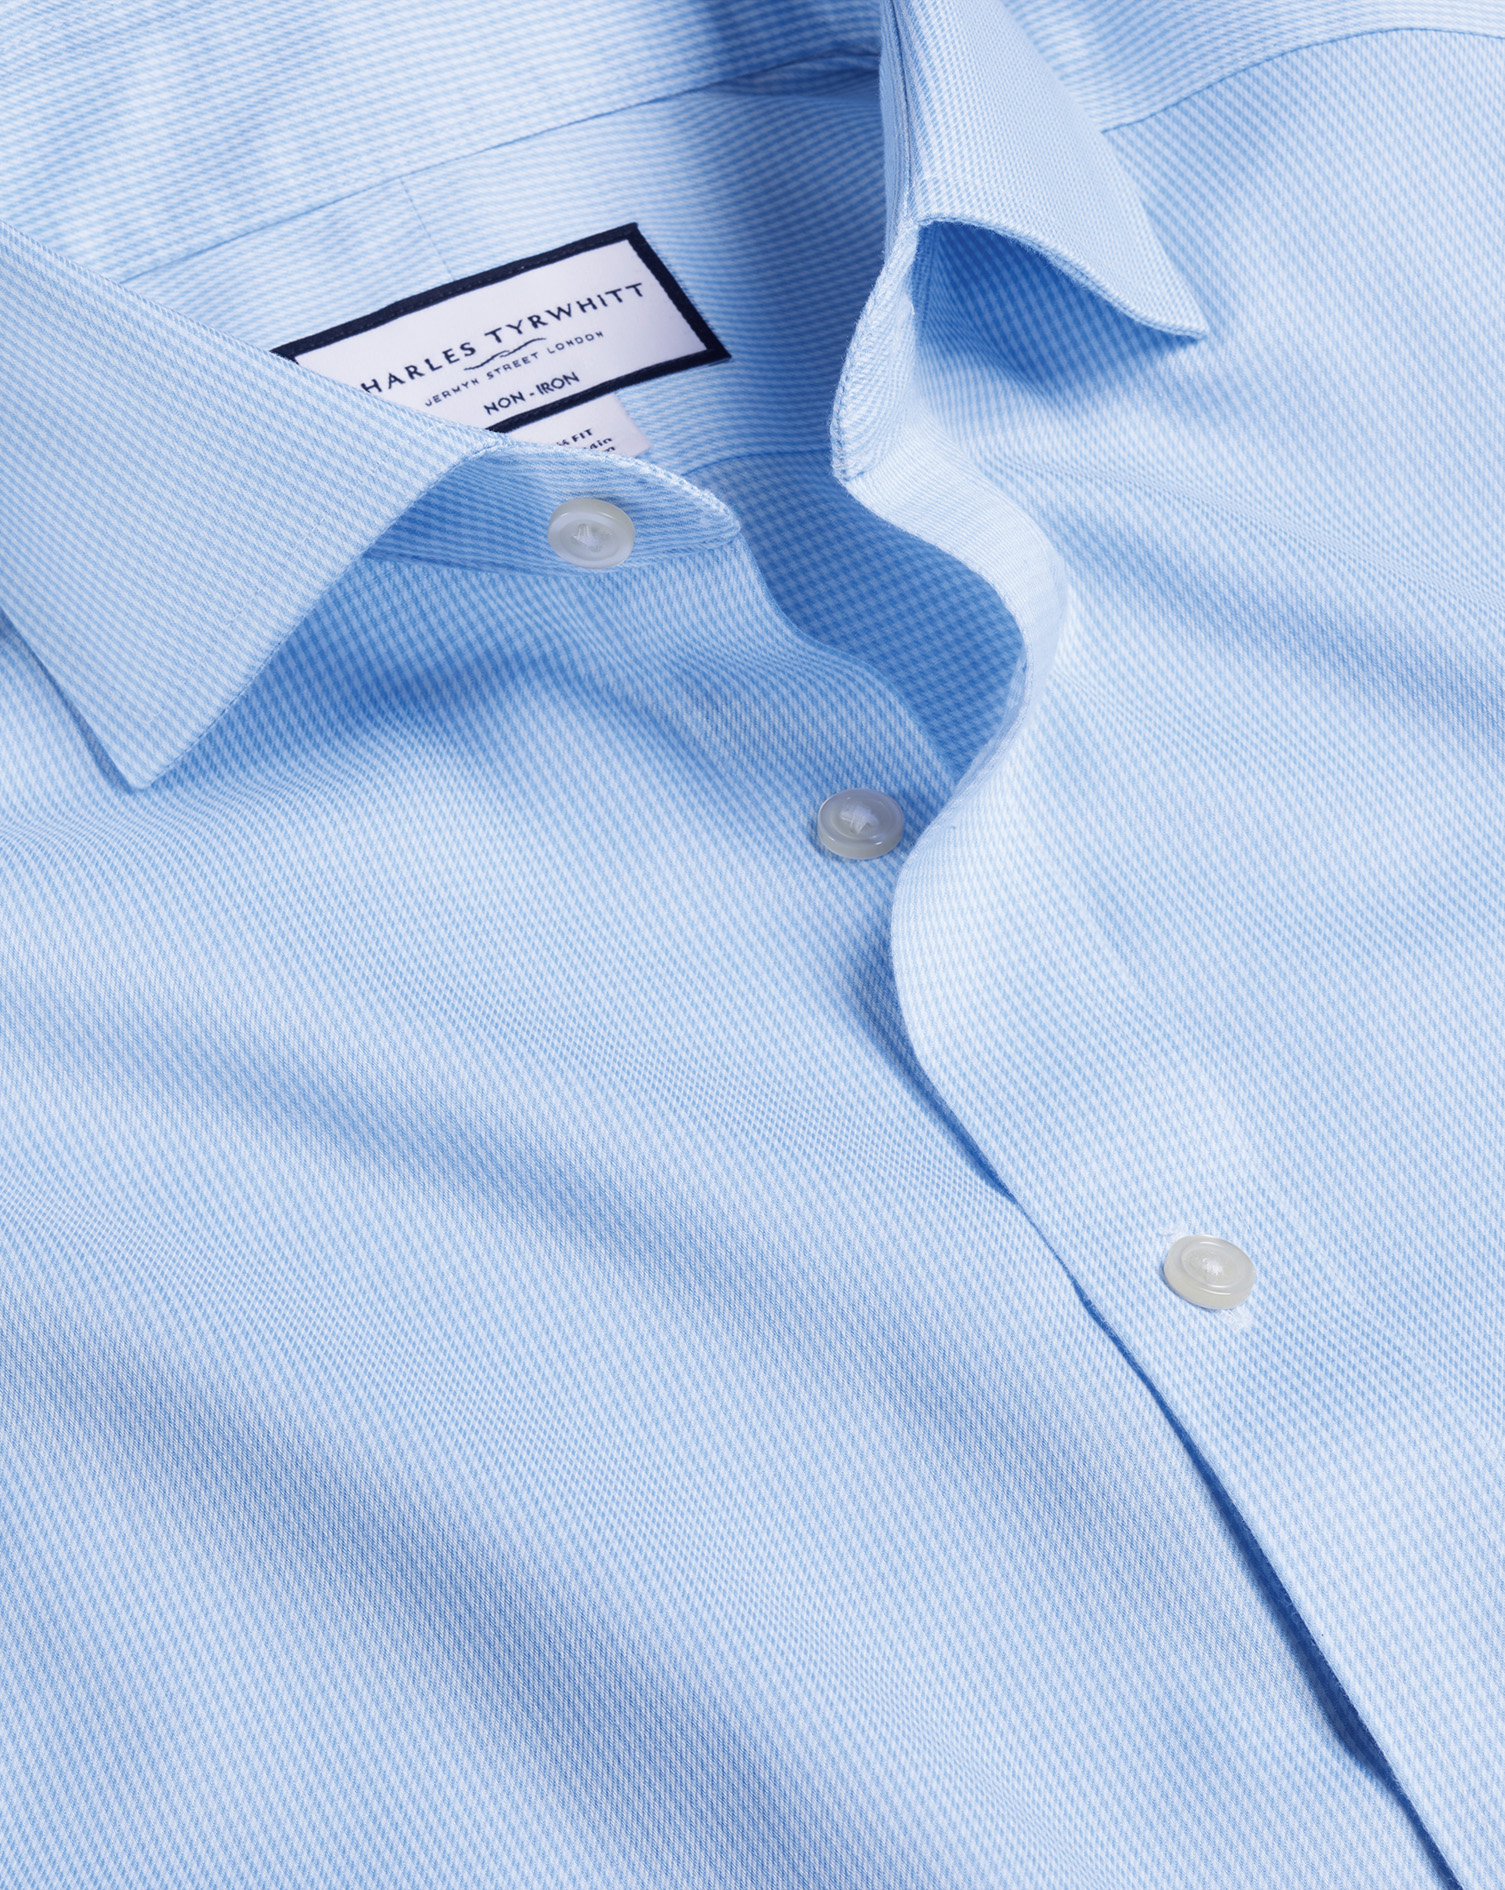 Men's Charles Tyrwhitt Cutaway Collar Non-Iron Puppytooth Dress Shirt - Sky Blue Single Cuff Size XL